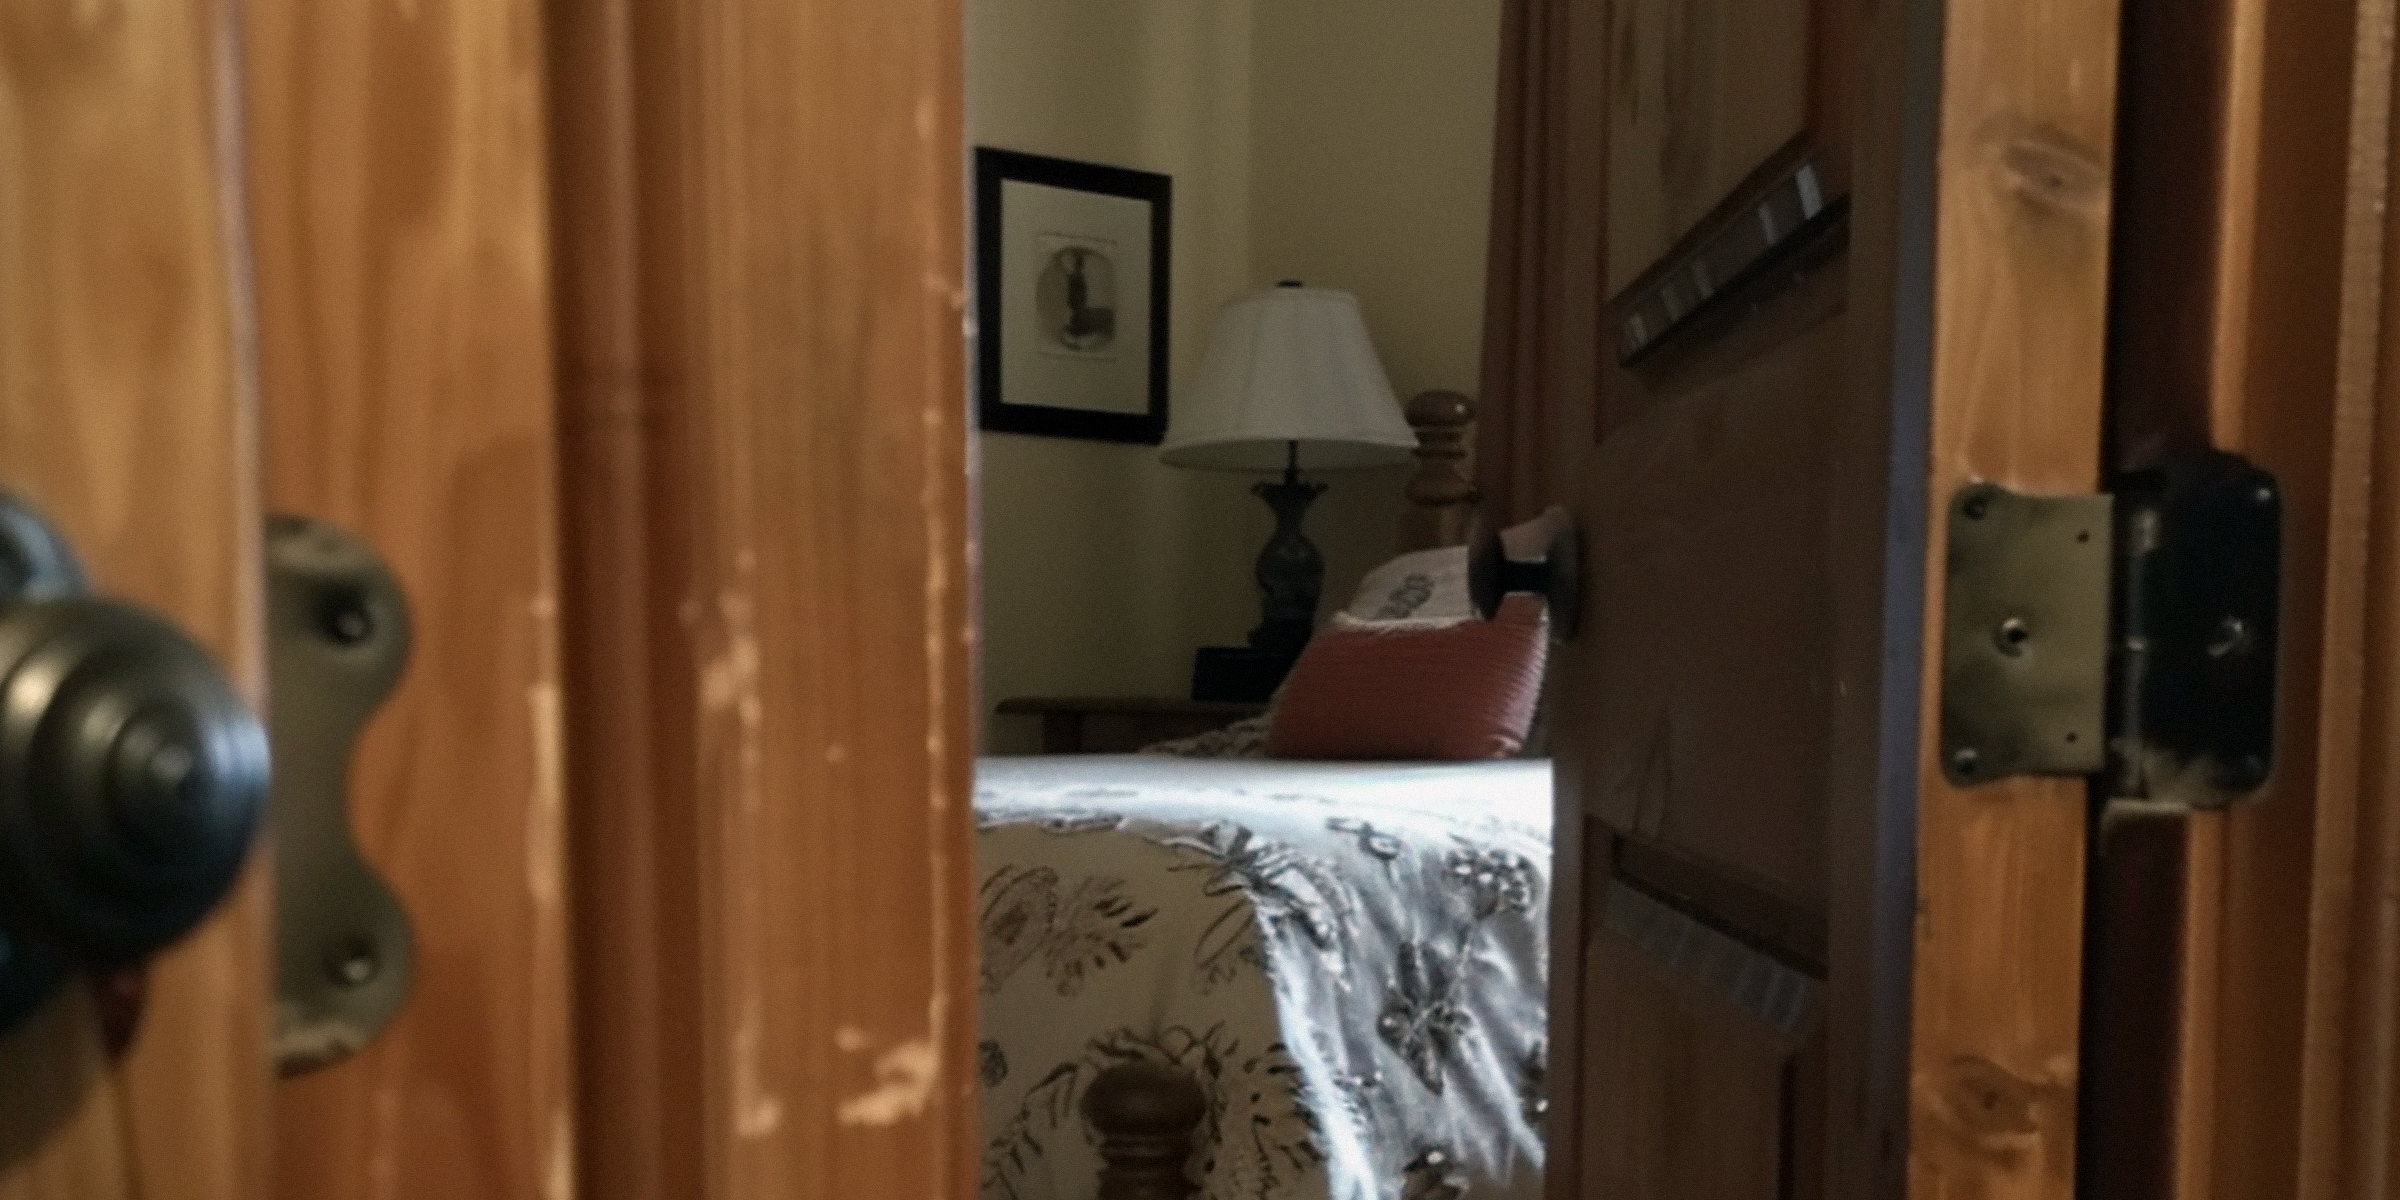 A door opening to a bedroom | Source: Midjourney